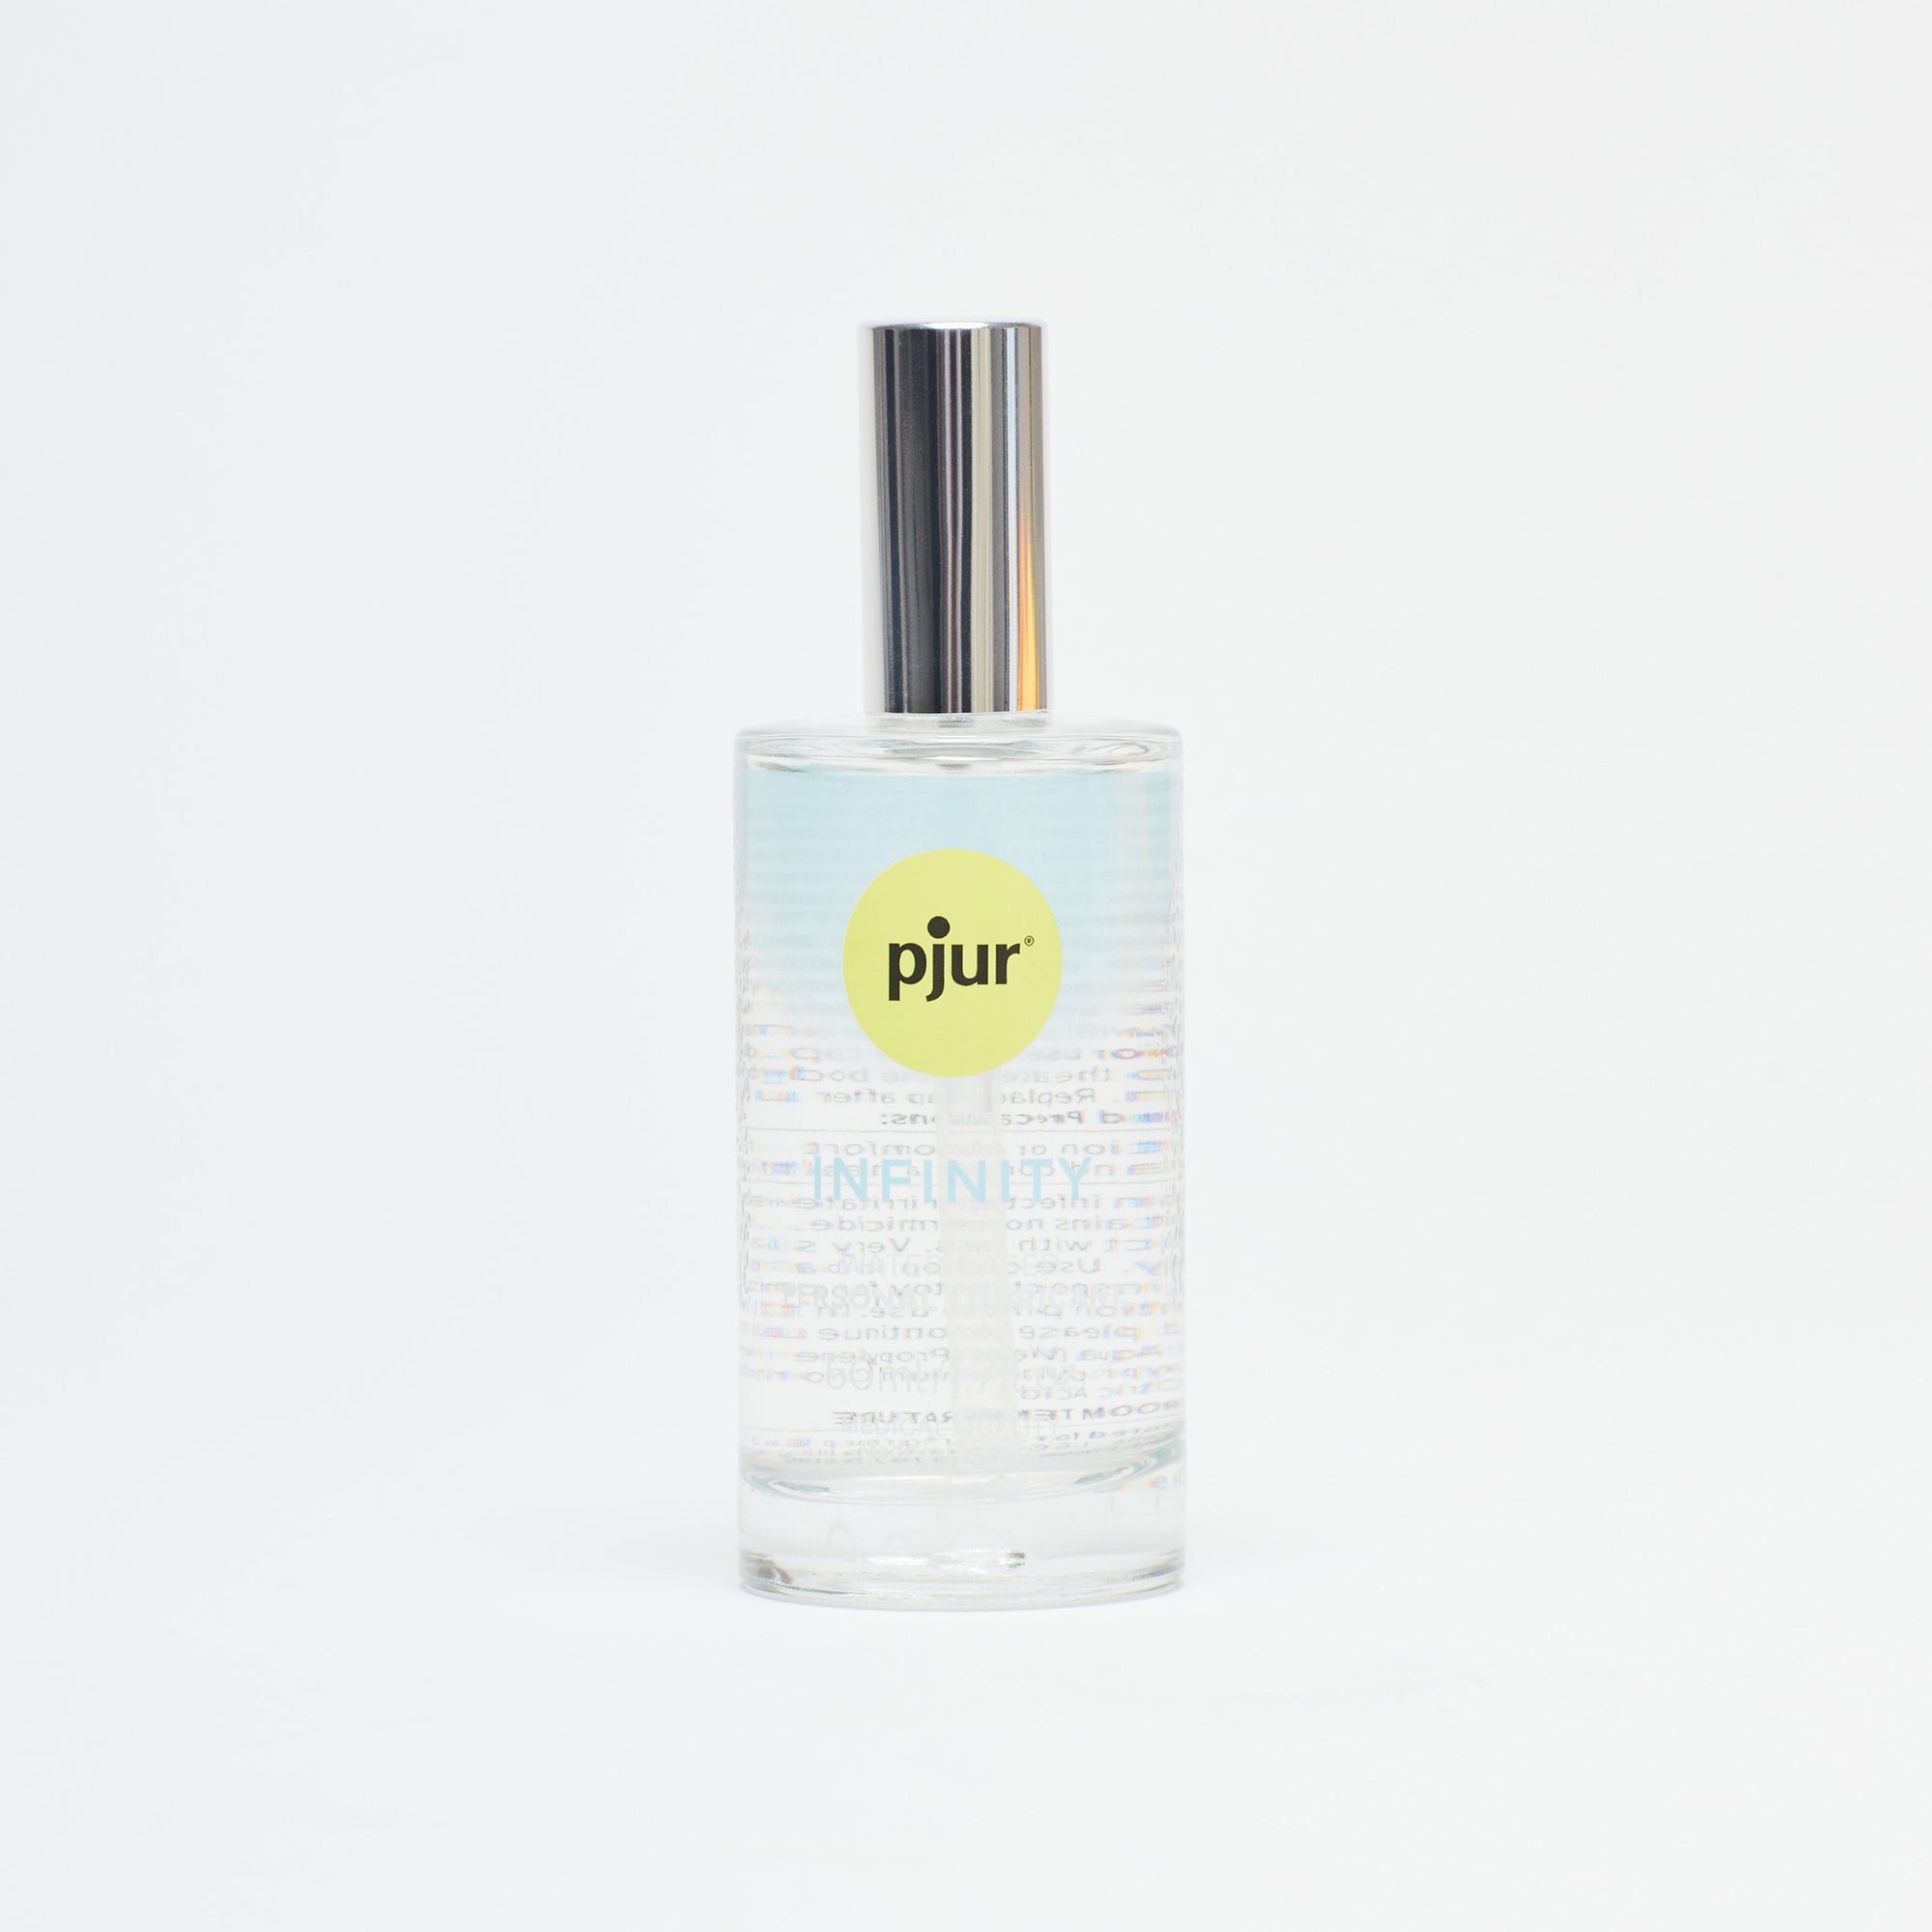 Pjur Infinity Water Based Lubricant